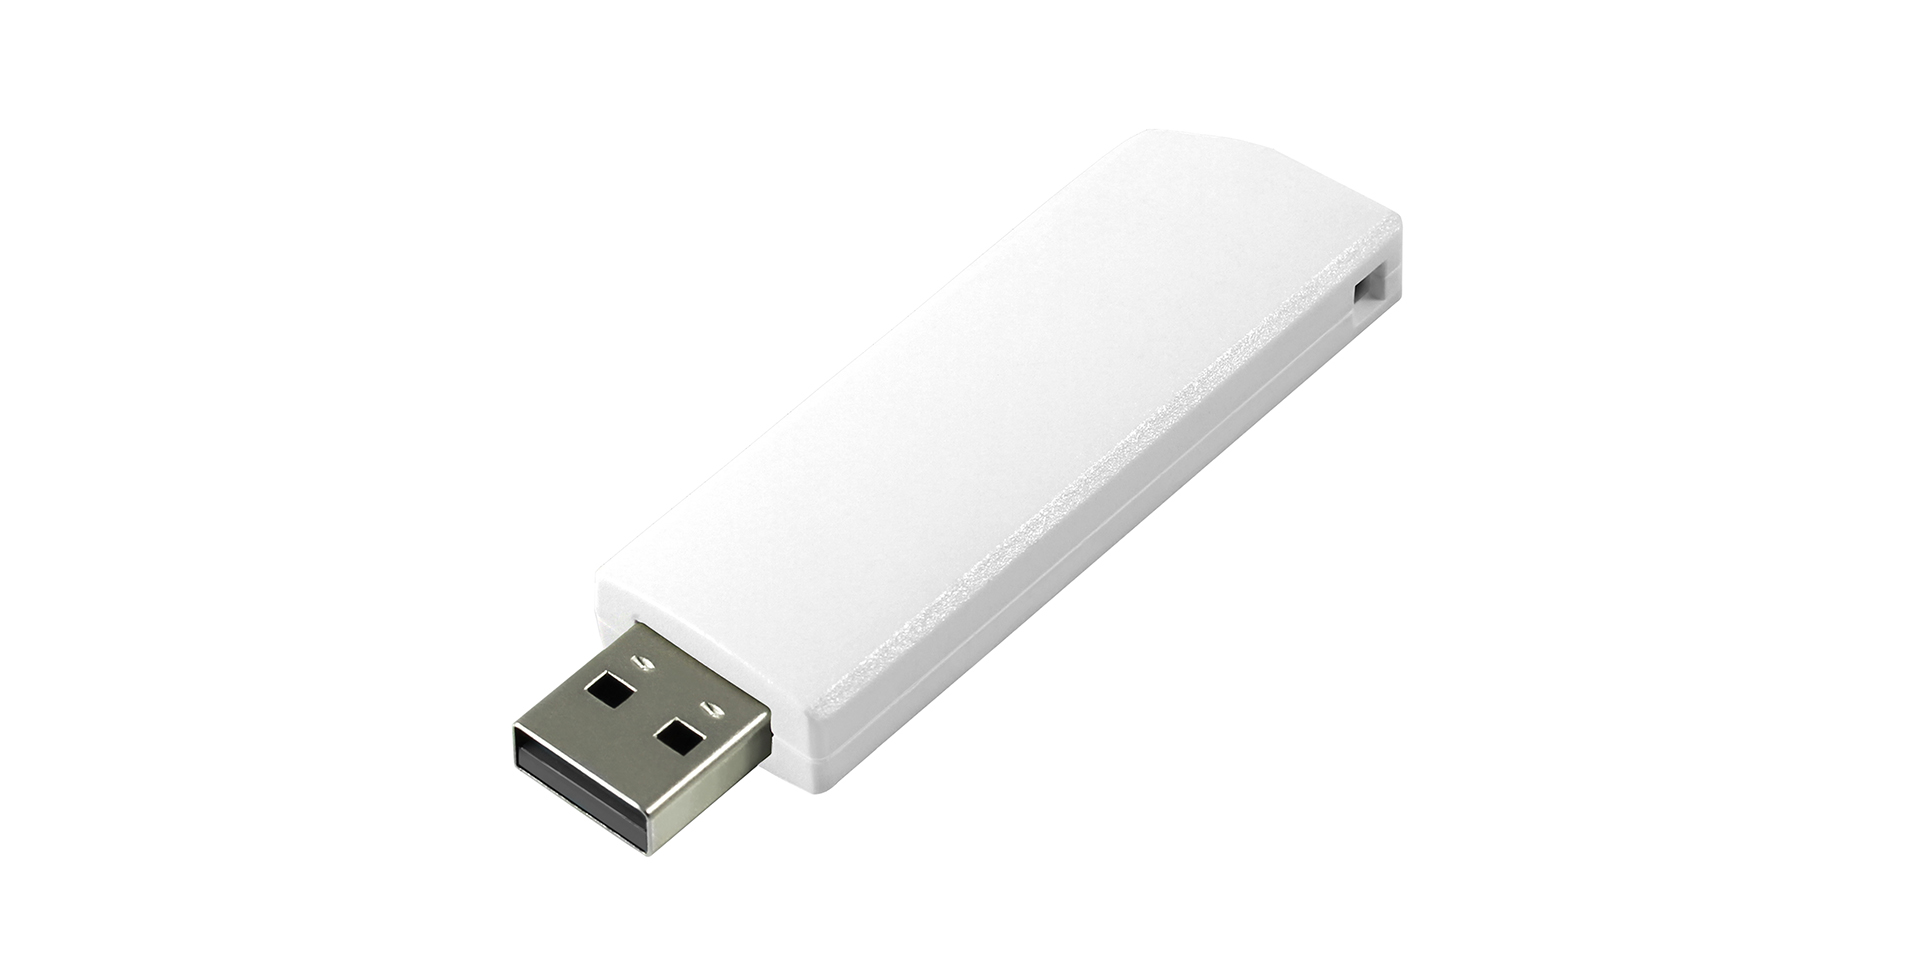 Flash drive blanca con conector extensible